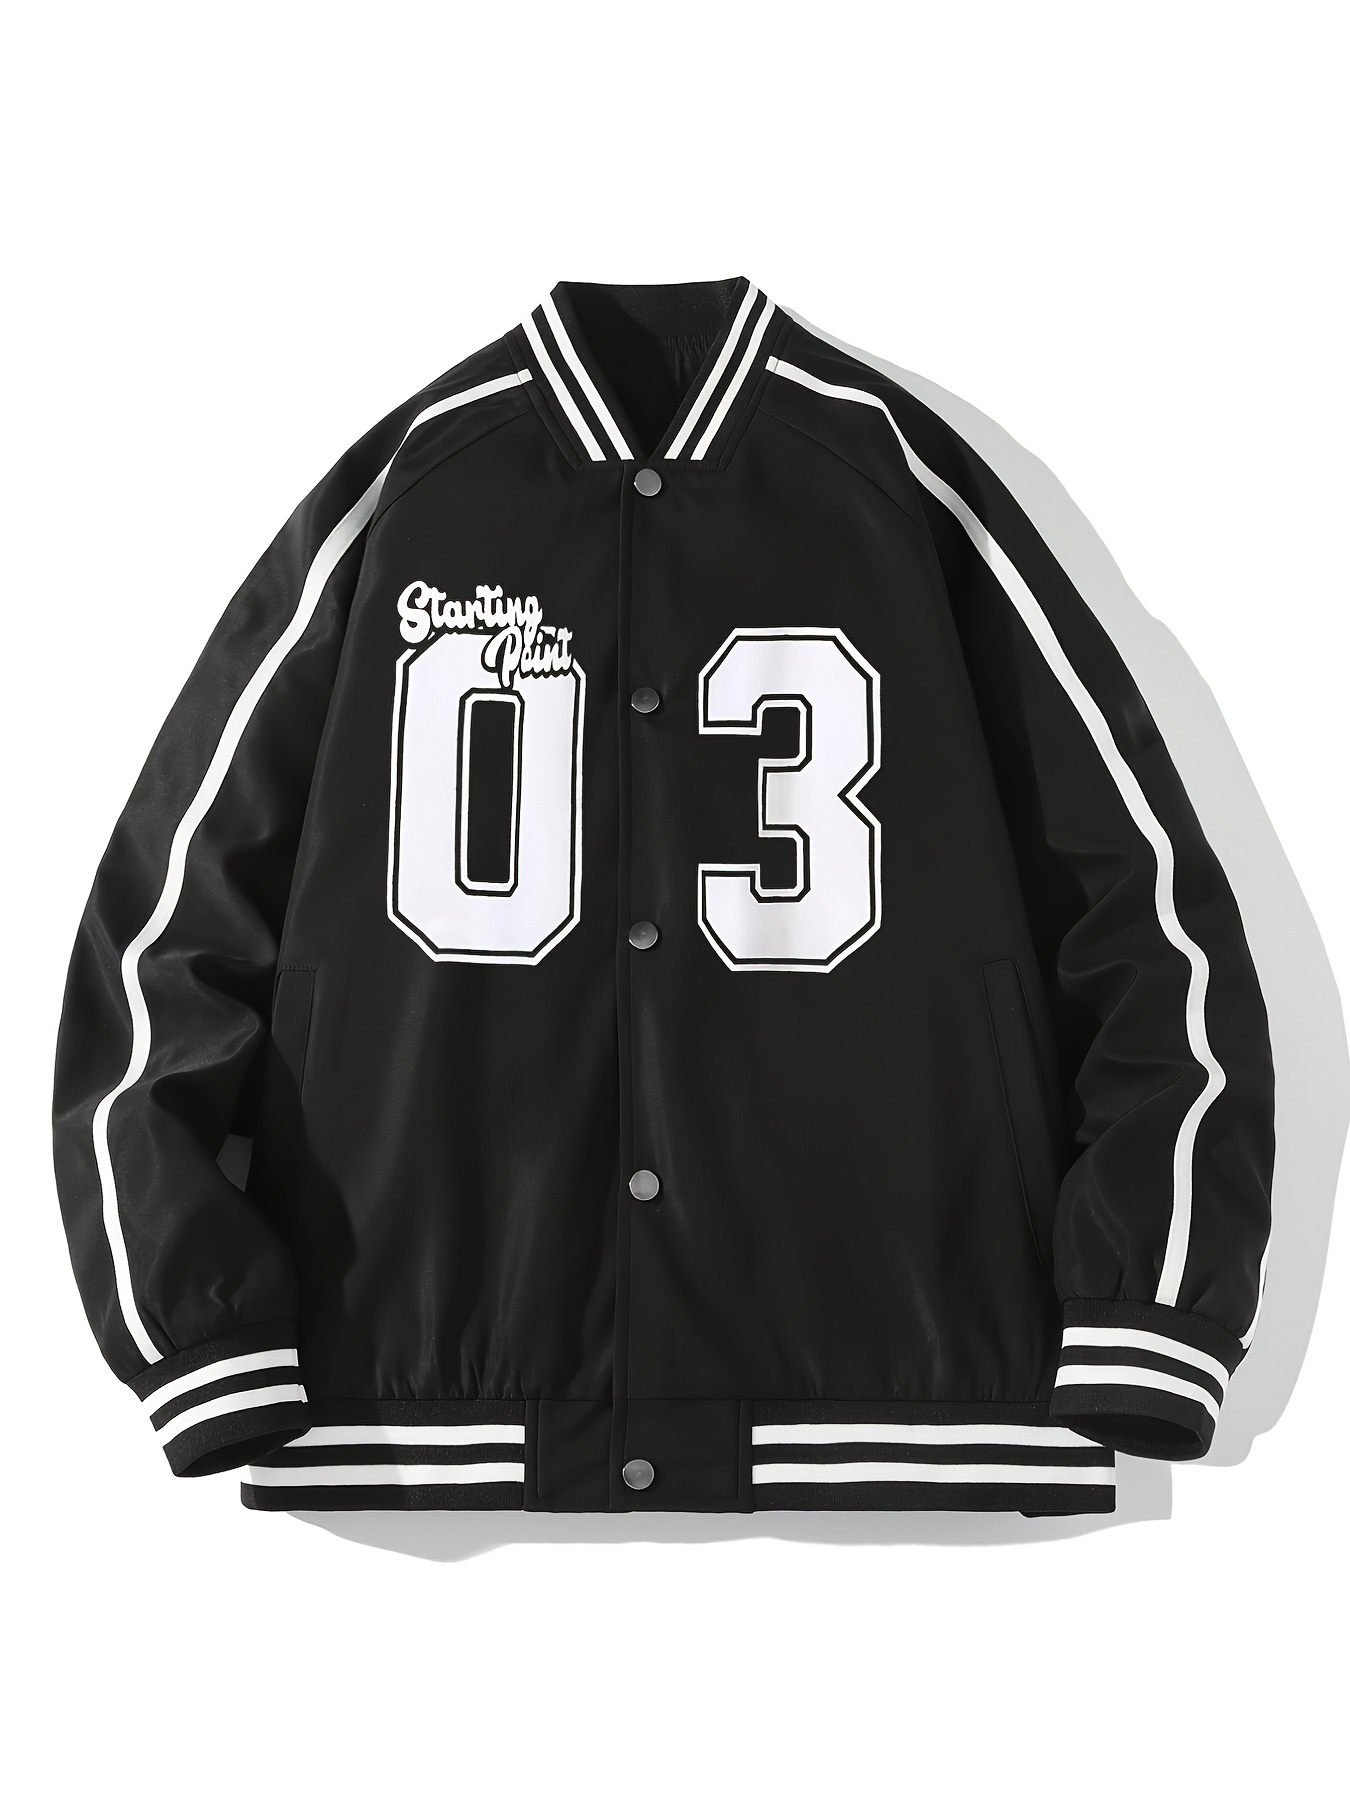 Mens College Varsity Jacket Baseball Vintage Leatherman Jacket